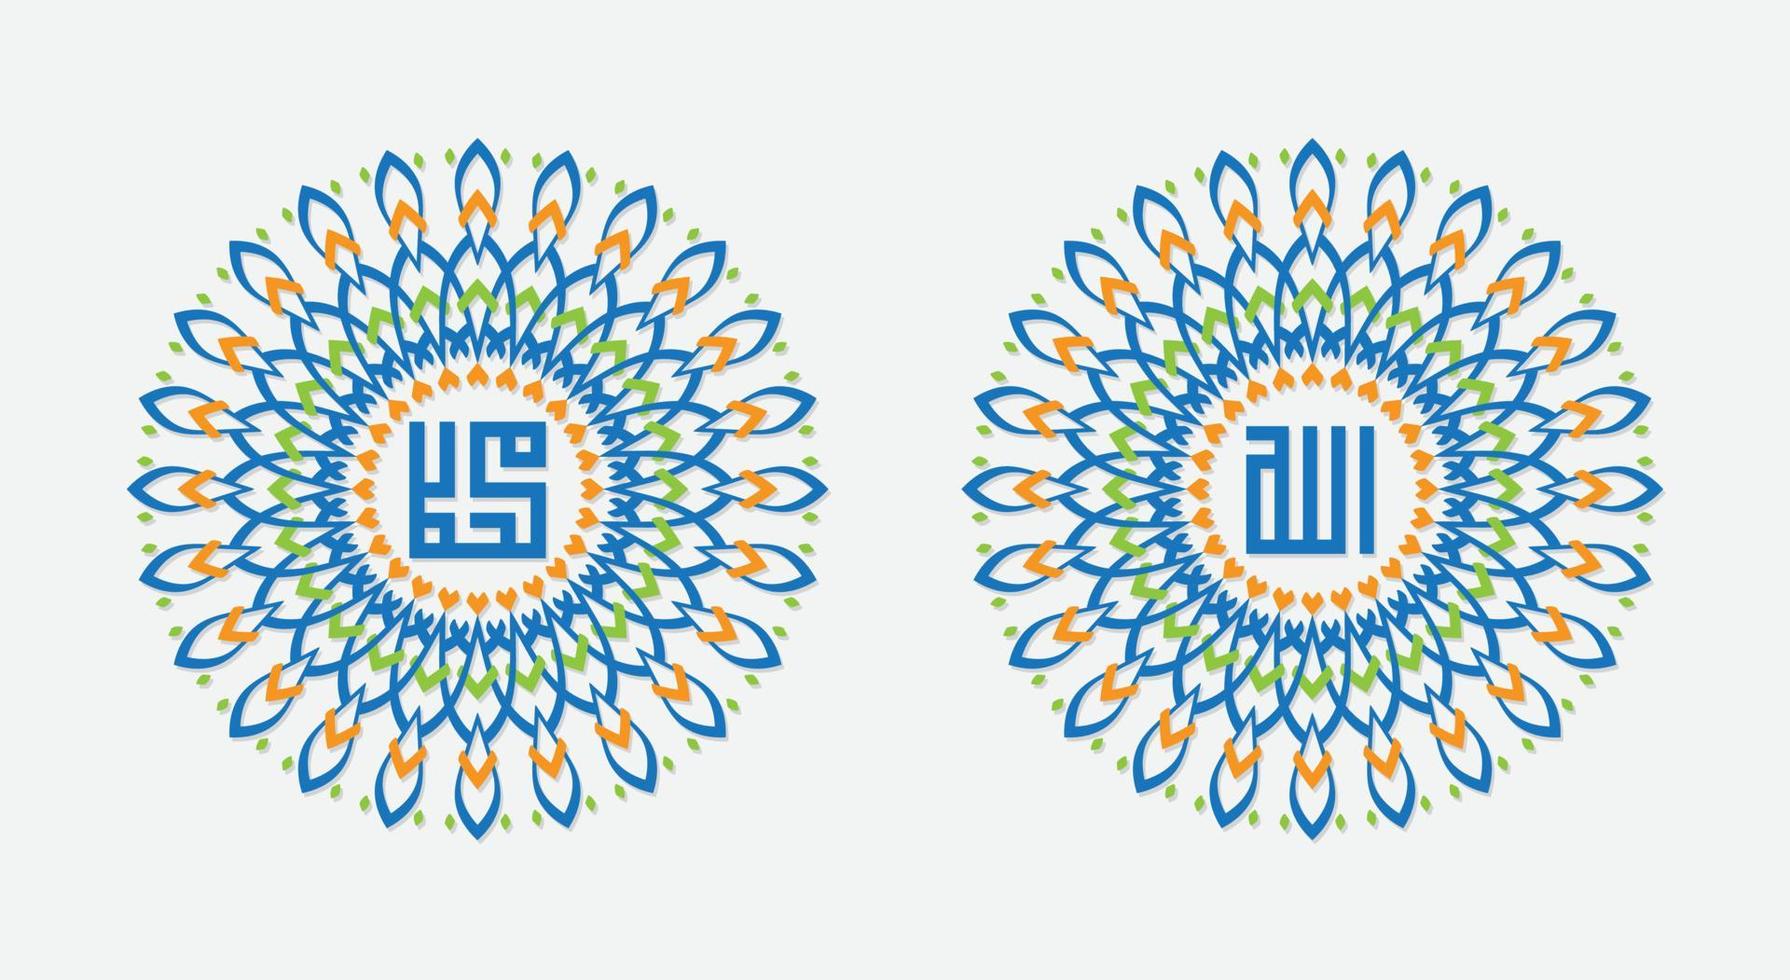 nombre de caligrafía islámica de allah muhammad diseño de vector de color azul y naranja, aislado sobre fondo negro.